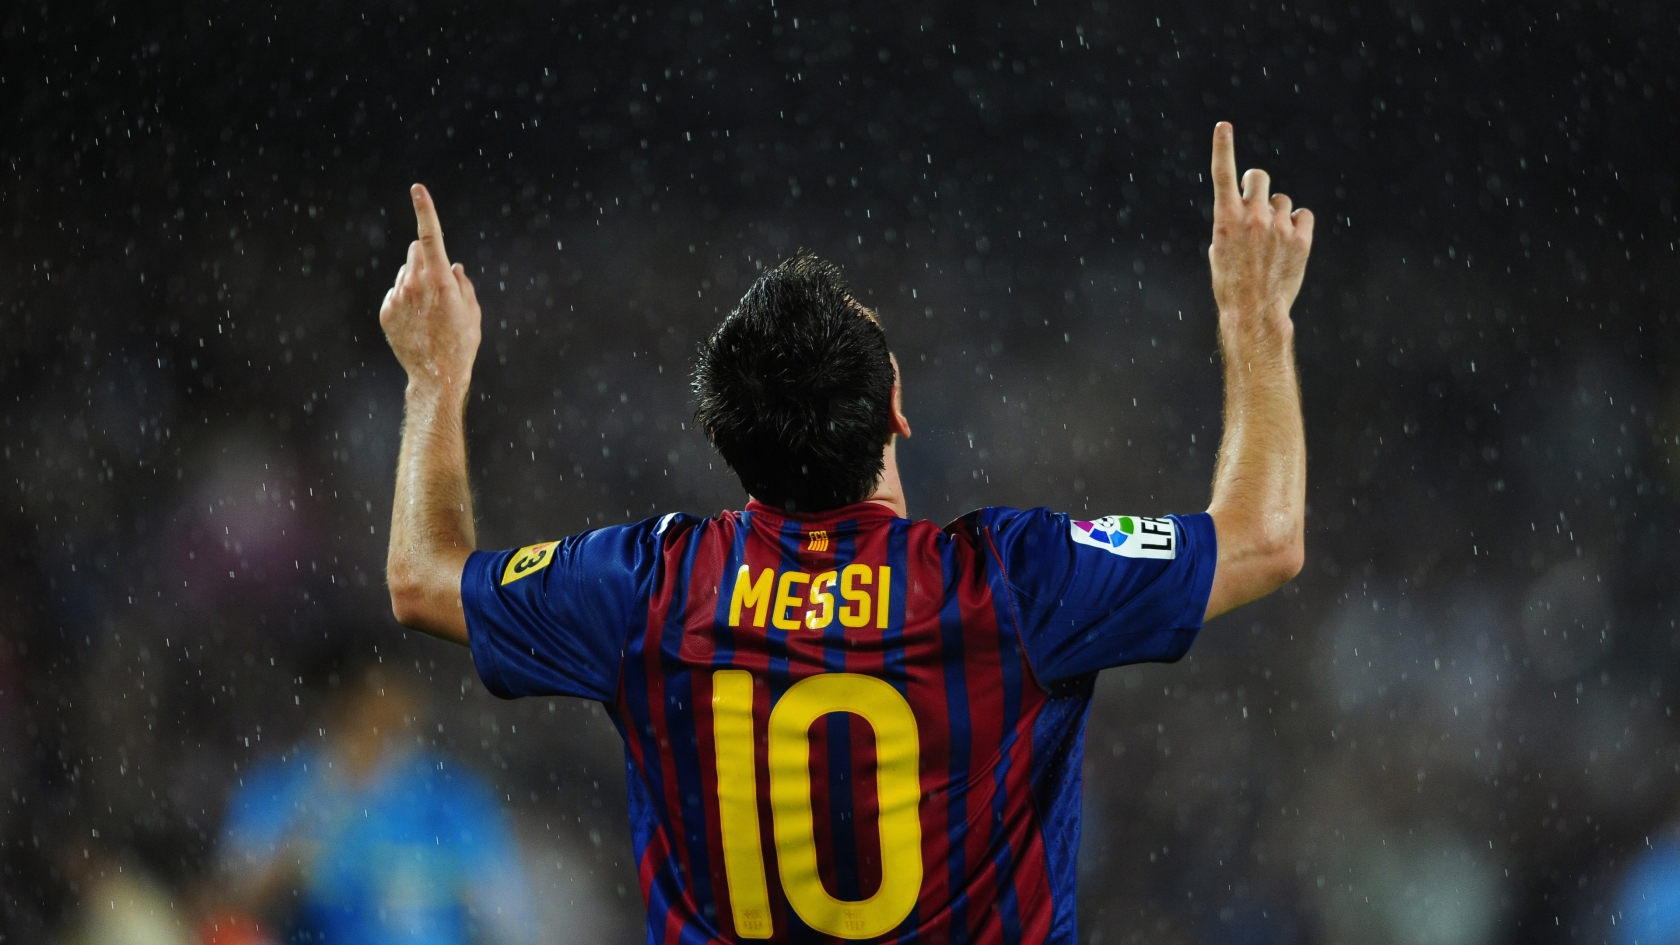 Lionel Messi in Rain for 1680 x 945 HDTV resolution